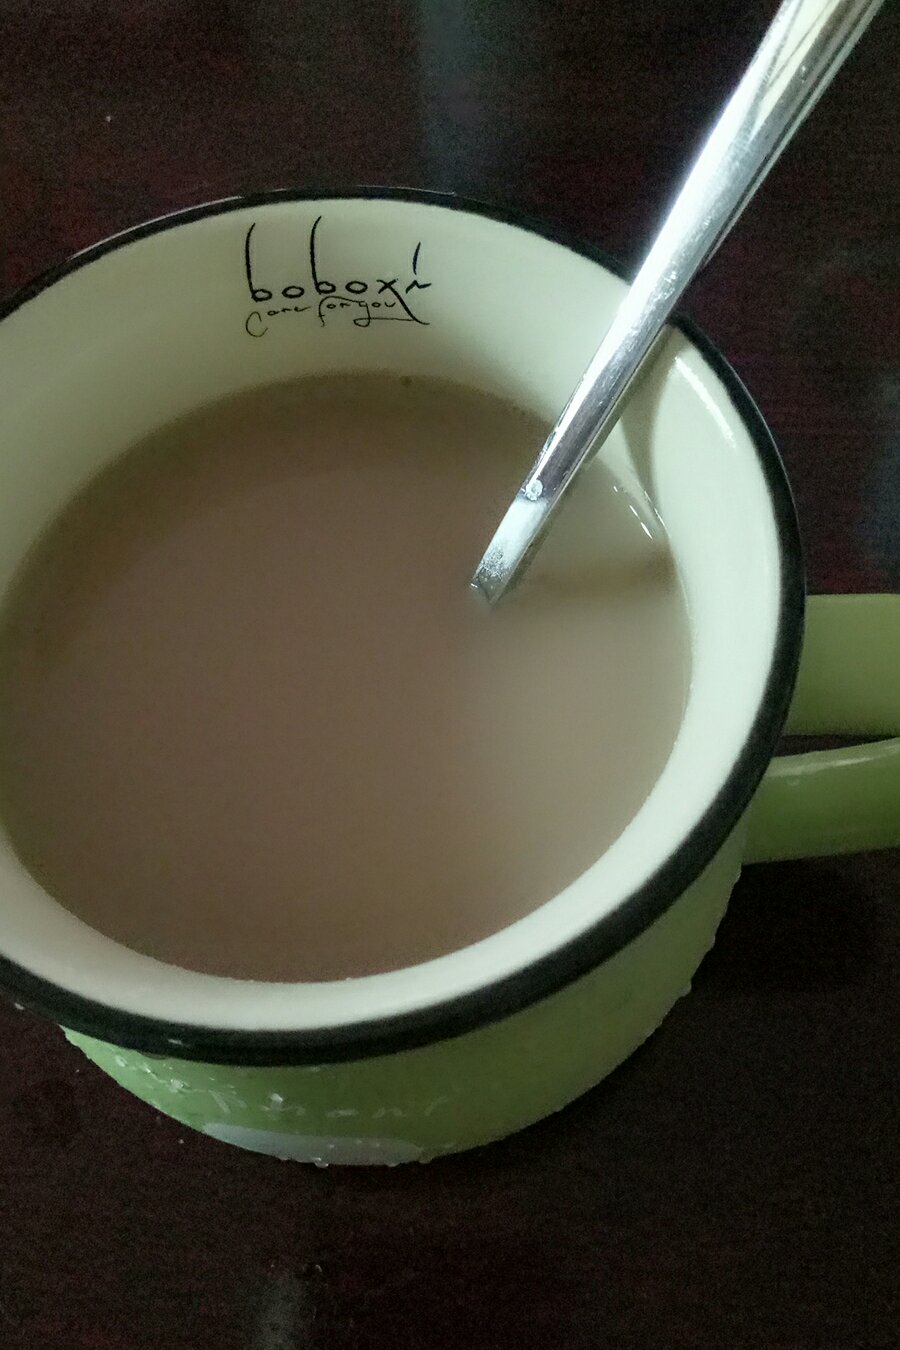 焦糖奶茶